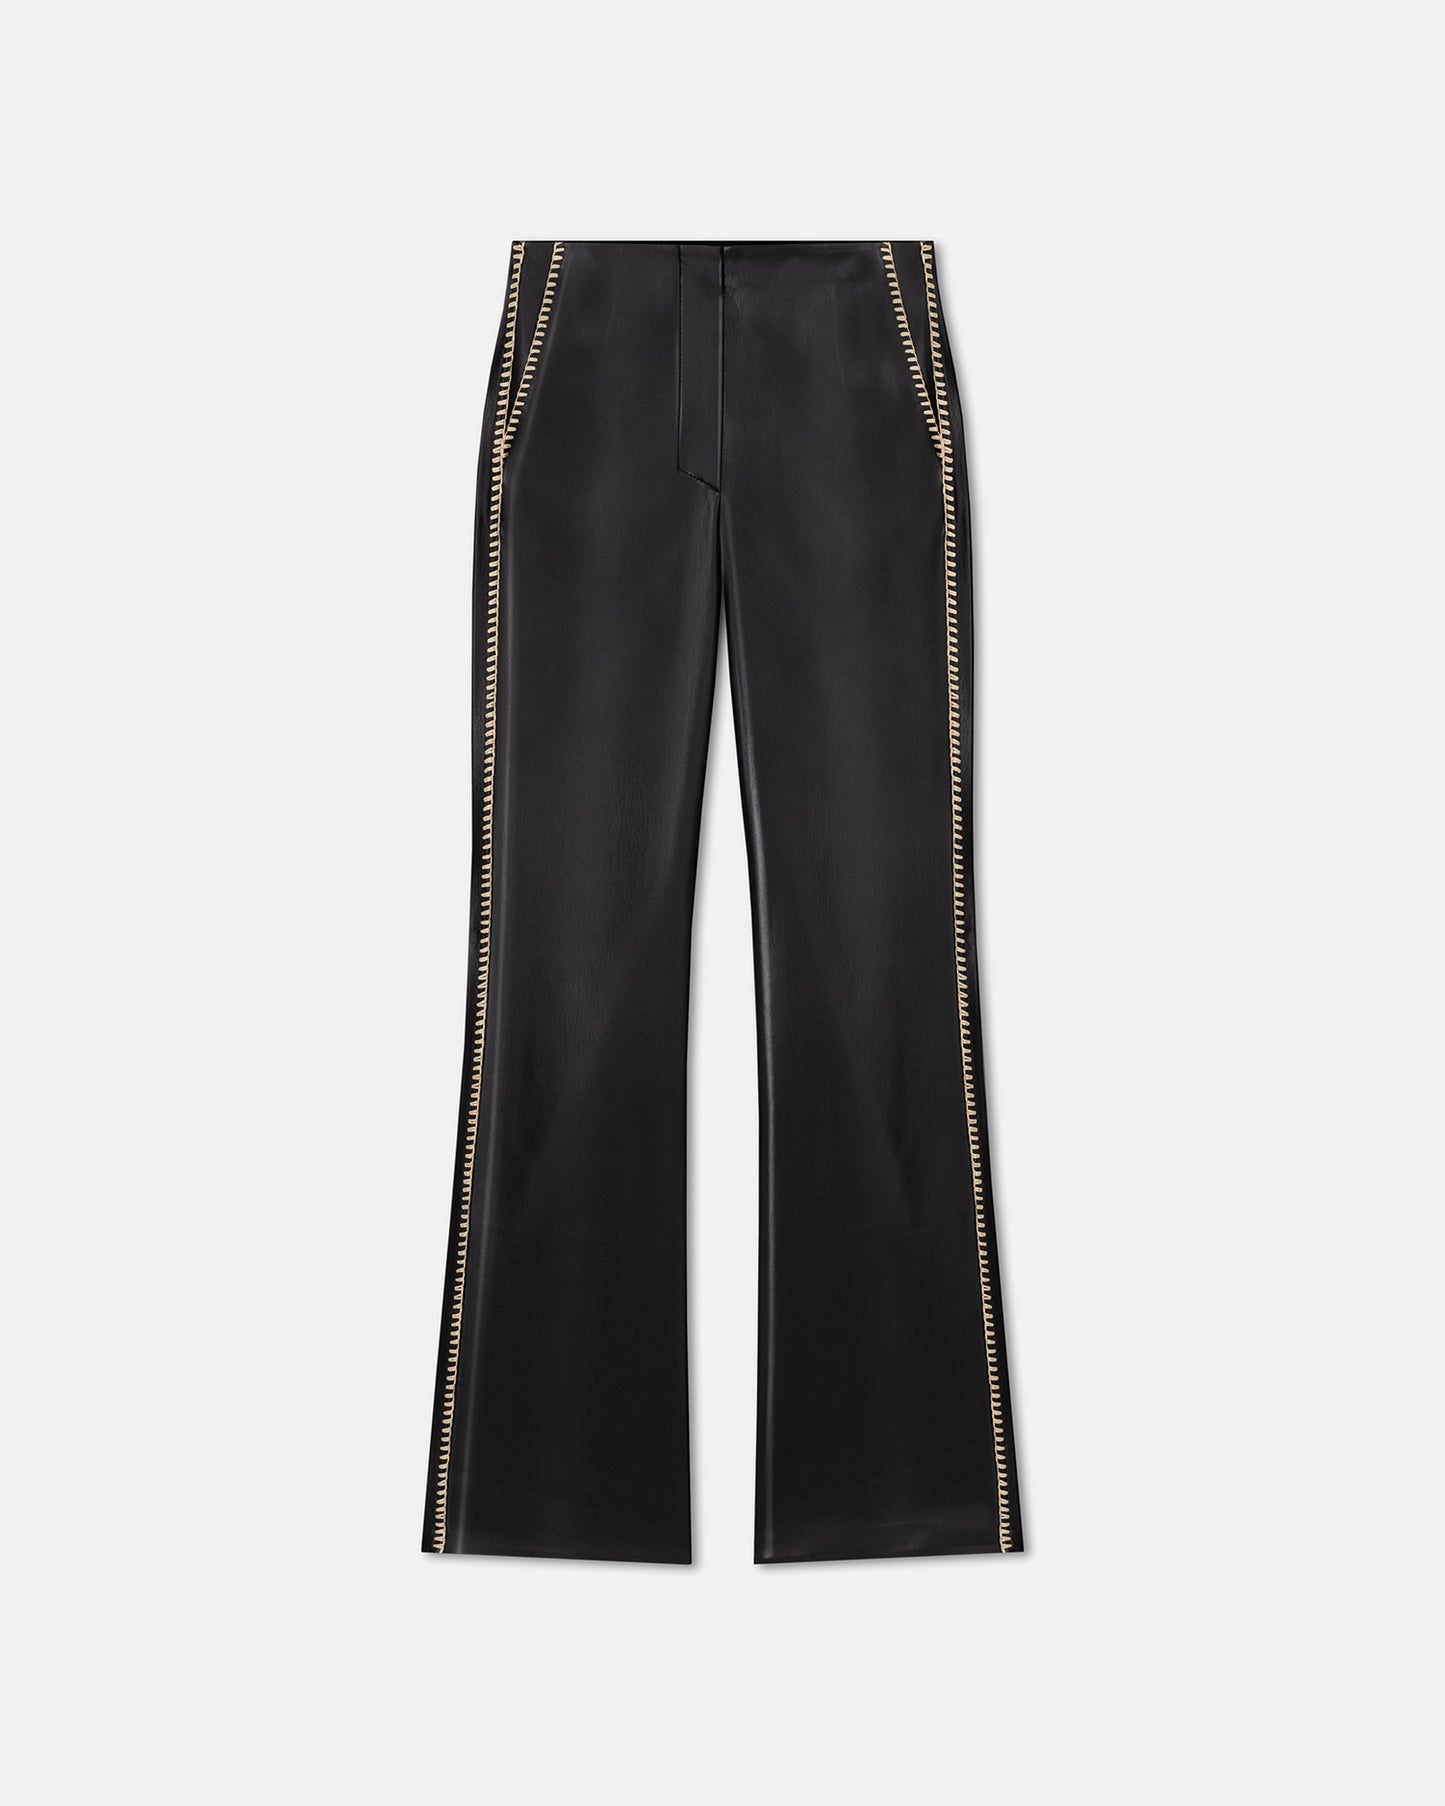 Manola - Okobor™ Alt-Leather Pants - Black